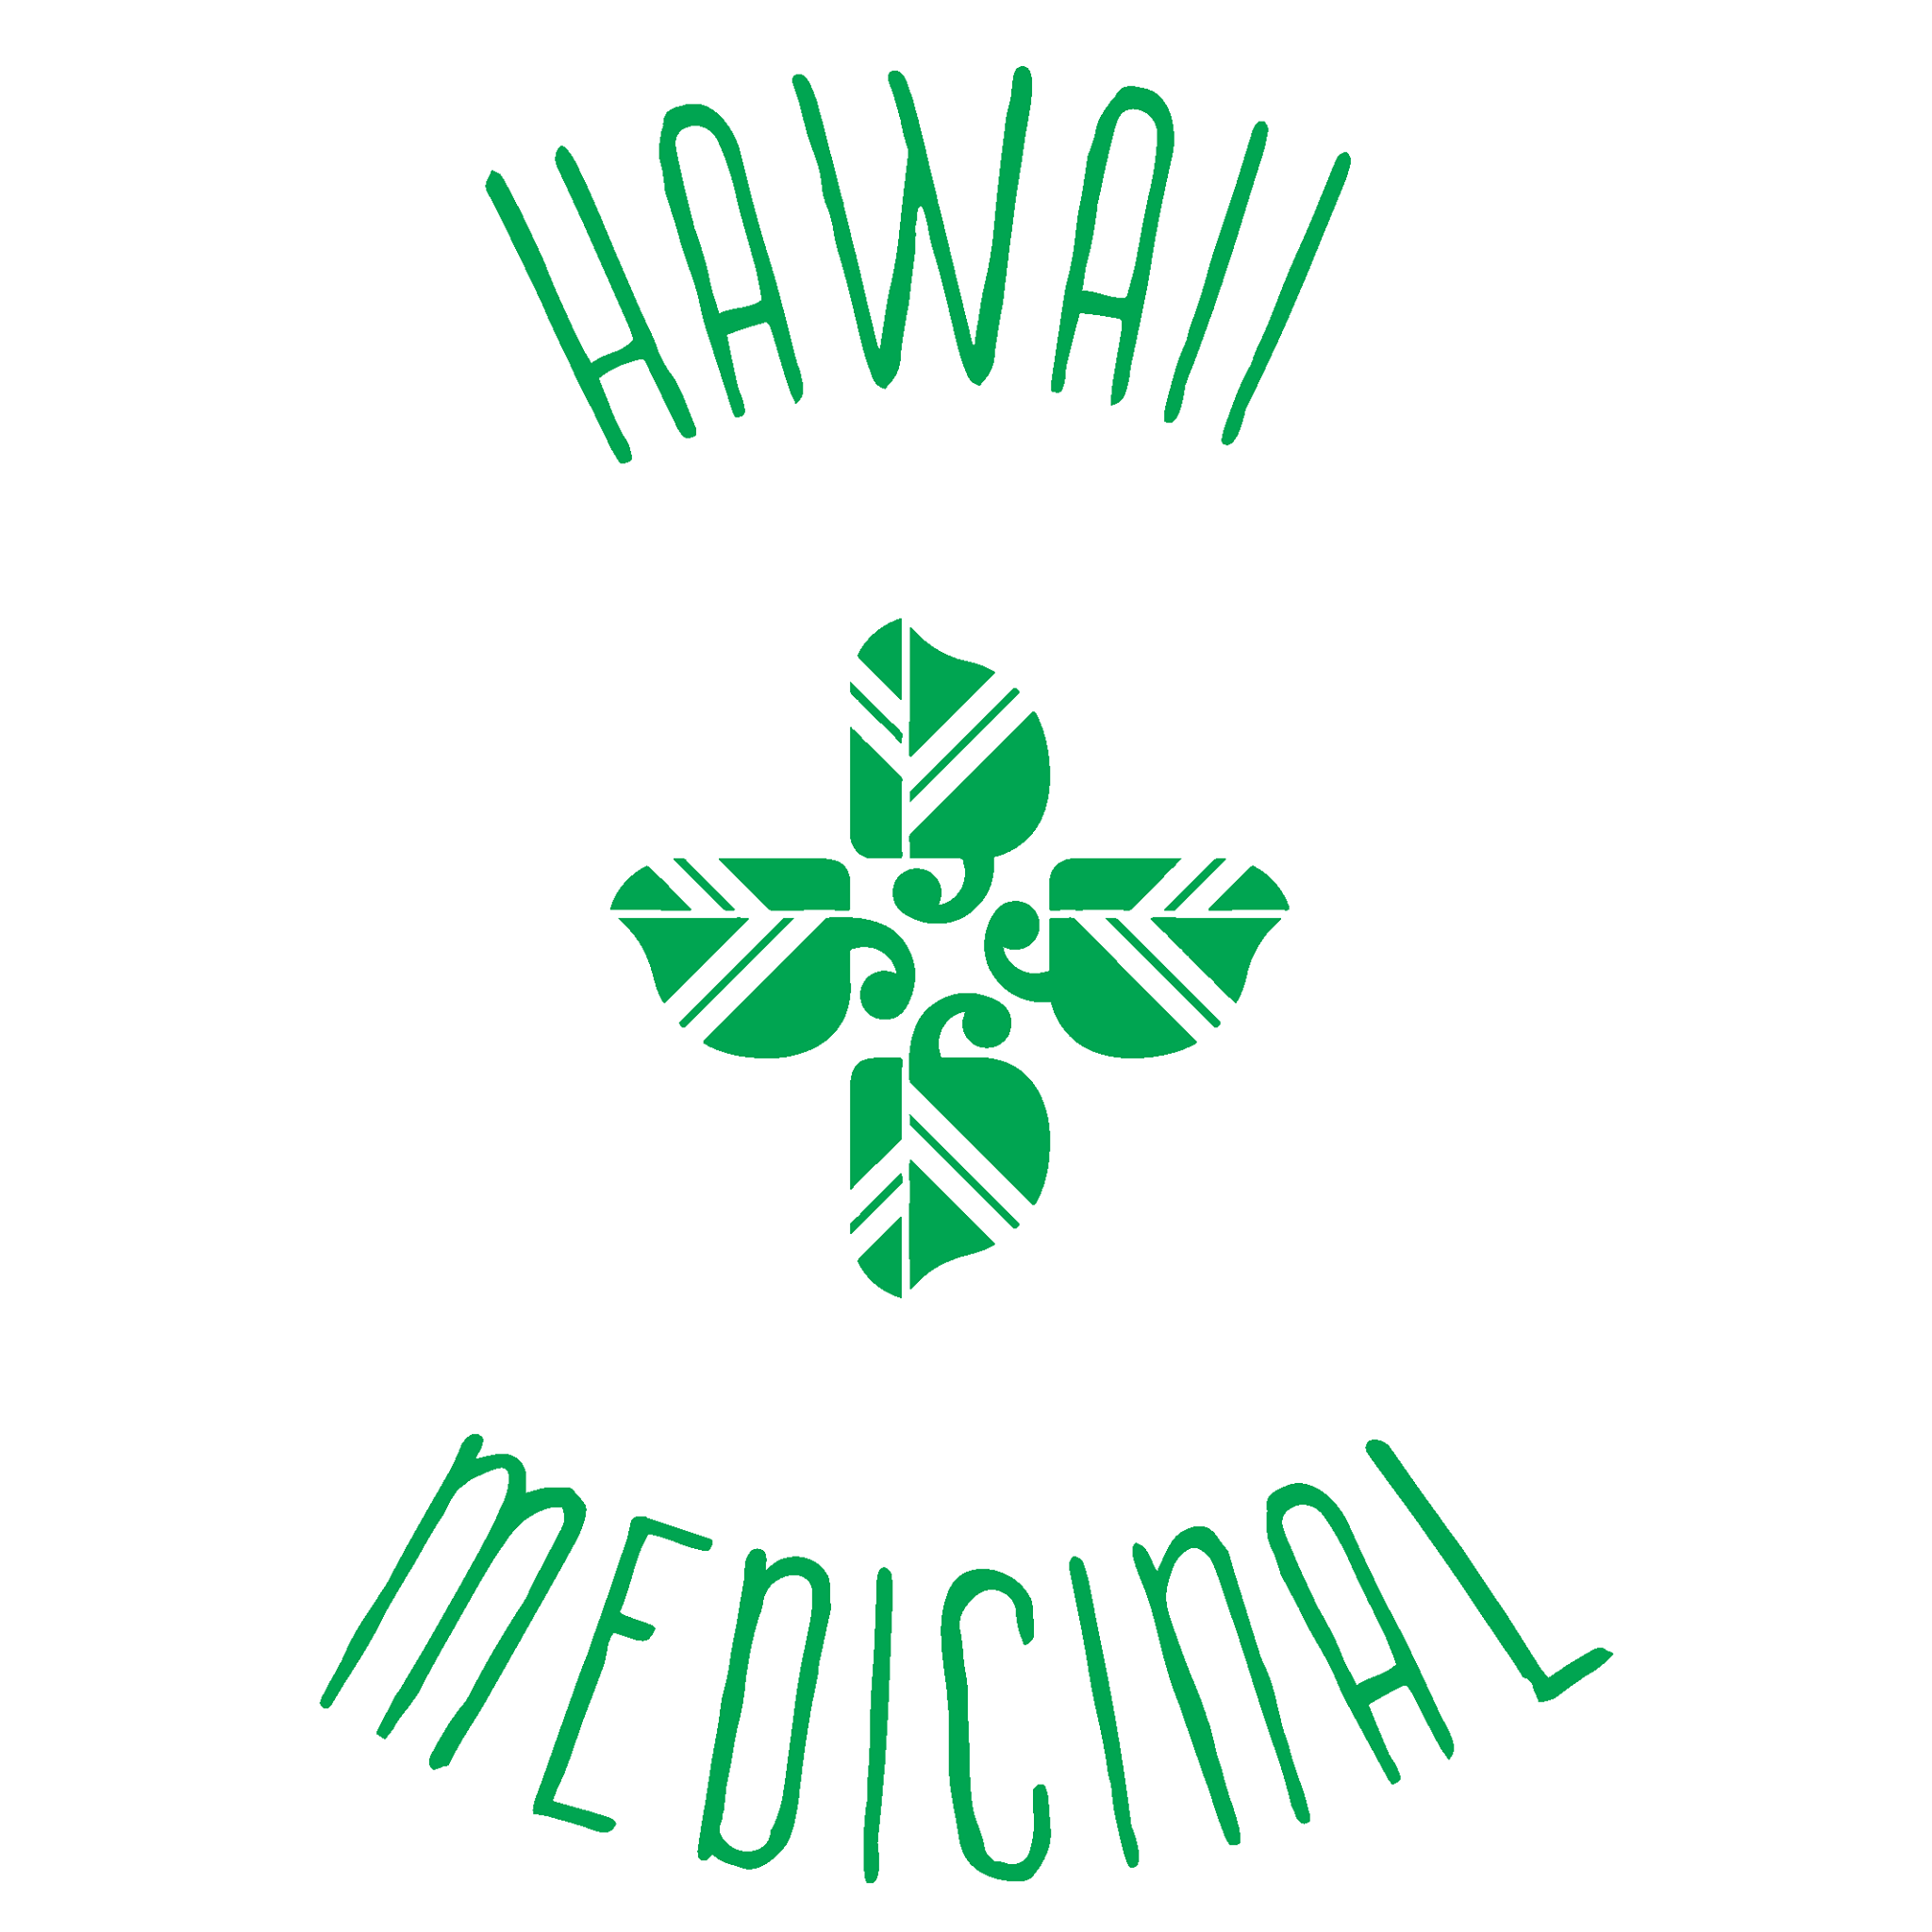 Company logo of Hawaii Medicinal Pet @ The Public Pet